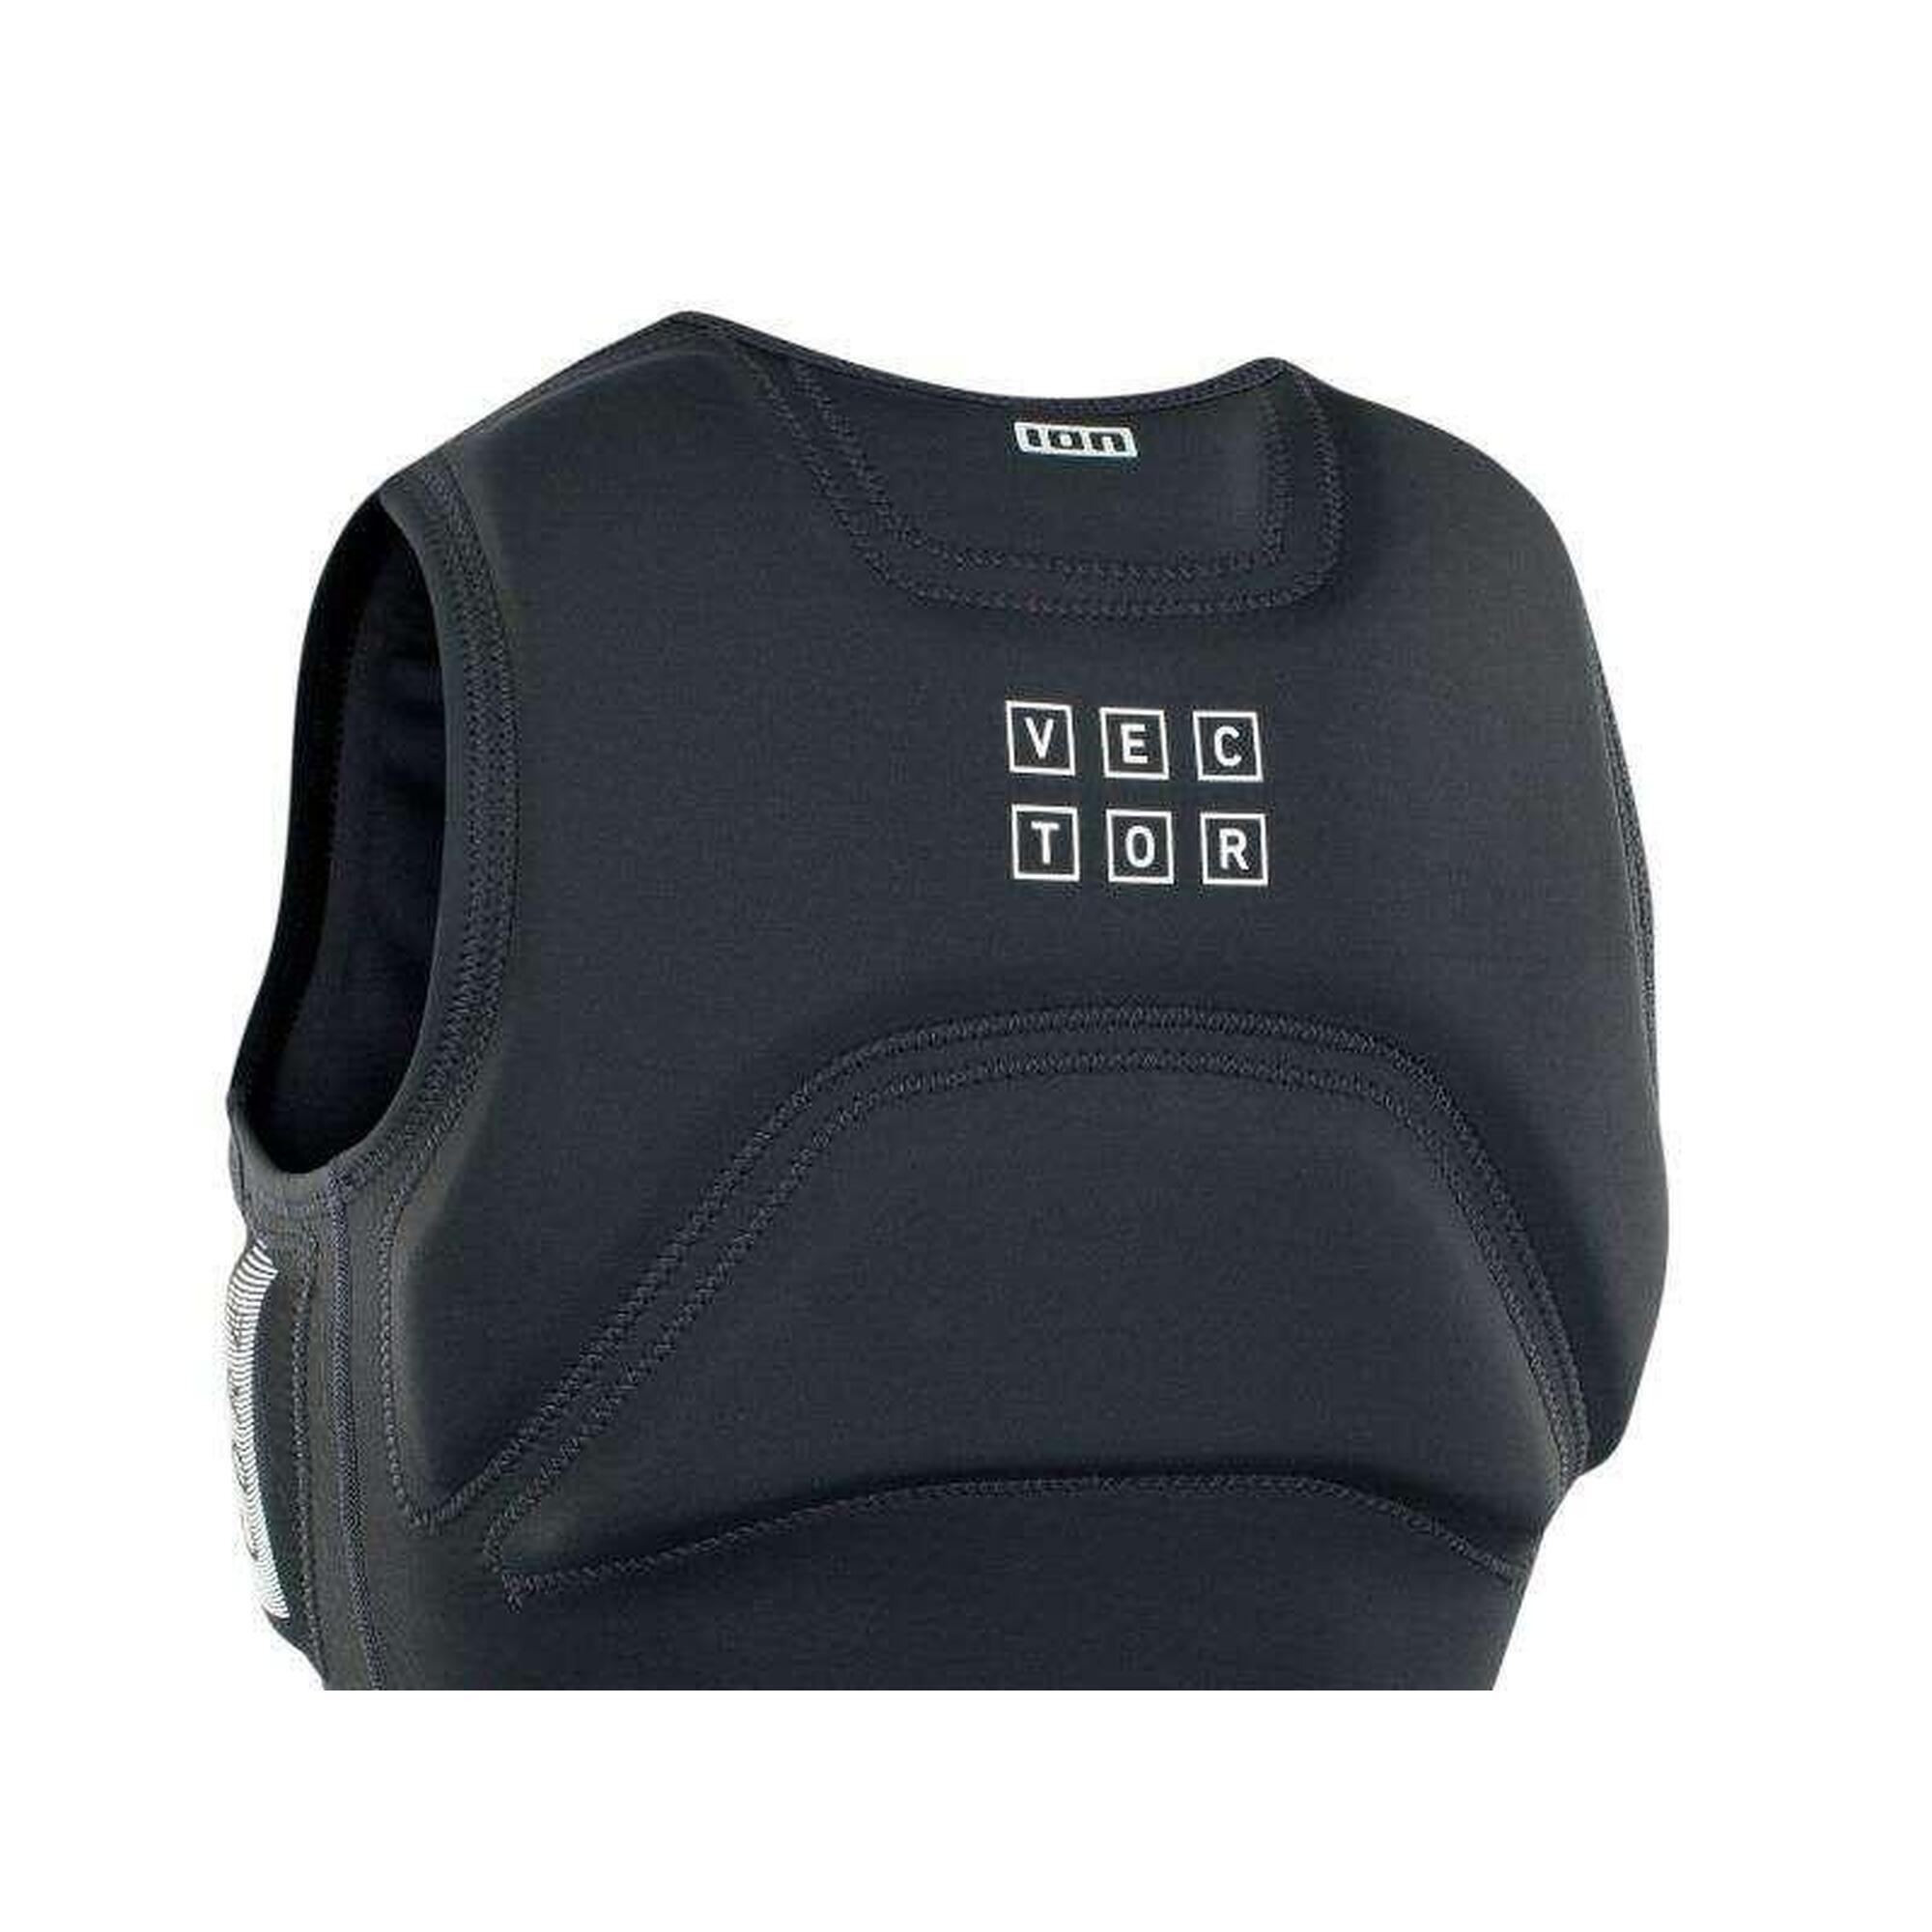 Kamizelka do sportów wodnych ION Vector Core Vest FZ